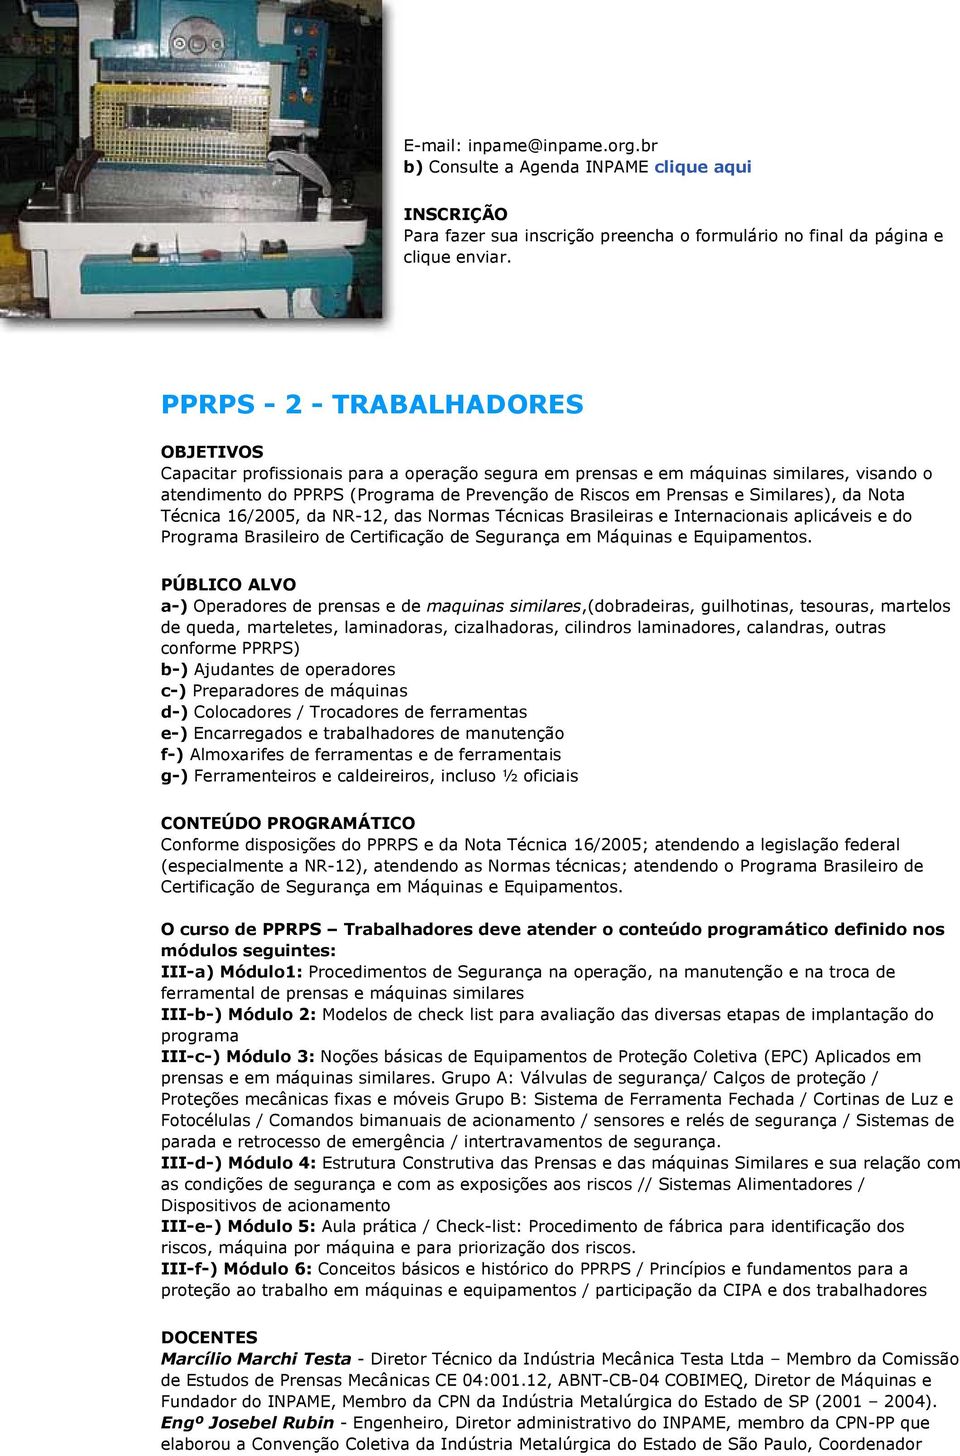 Similares), da Nota Técnica 16/2005, da NR-12, das Normas Técnicas Brasileiras e Internacionais aplicáveis e do Programa Brasileiro de Certificação de Segurança em Máquinas e Equipamentos.